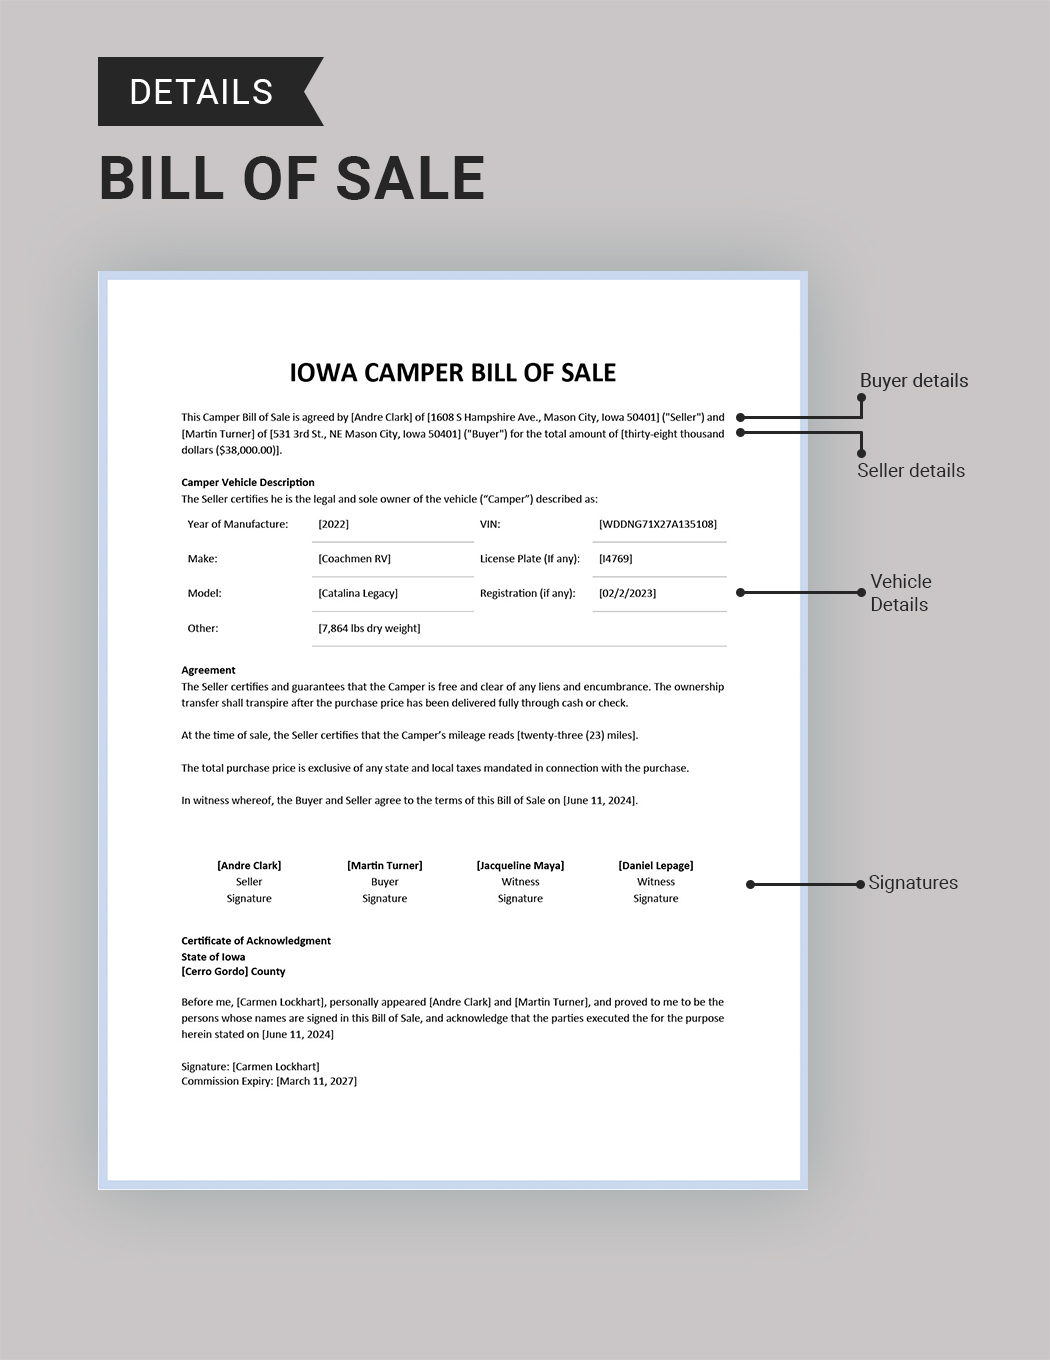 Iowa Camper Bill of Sale Template